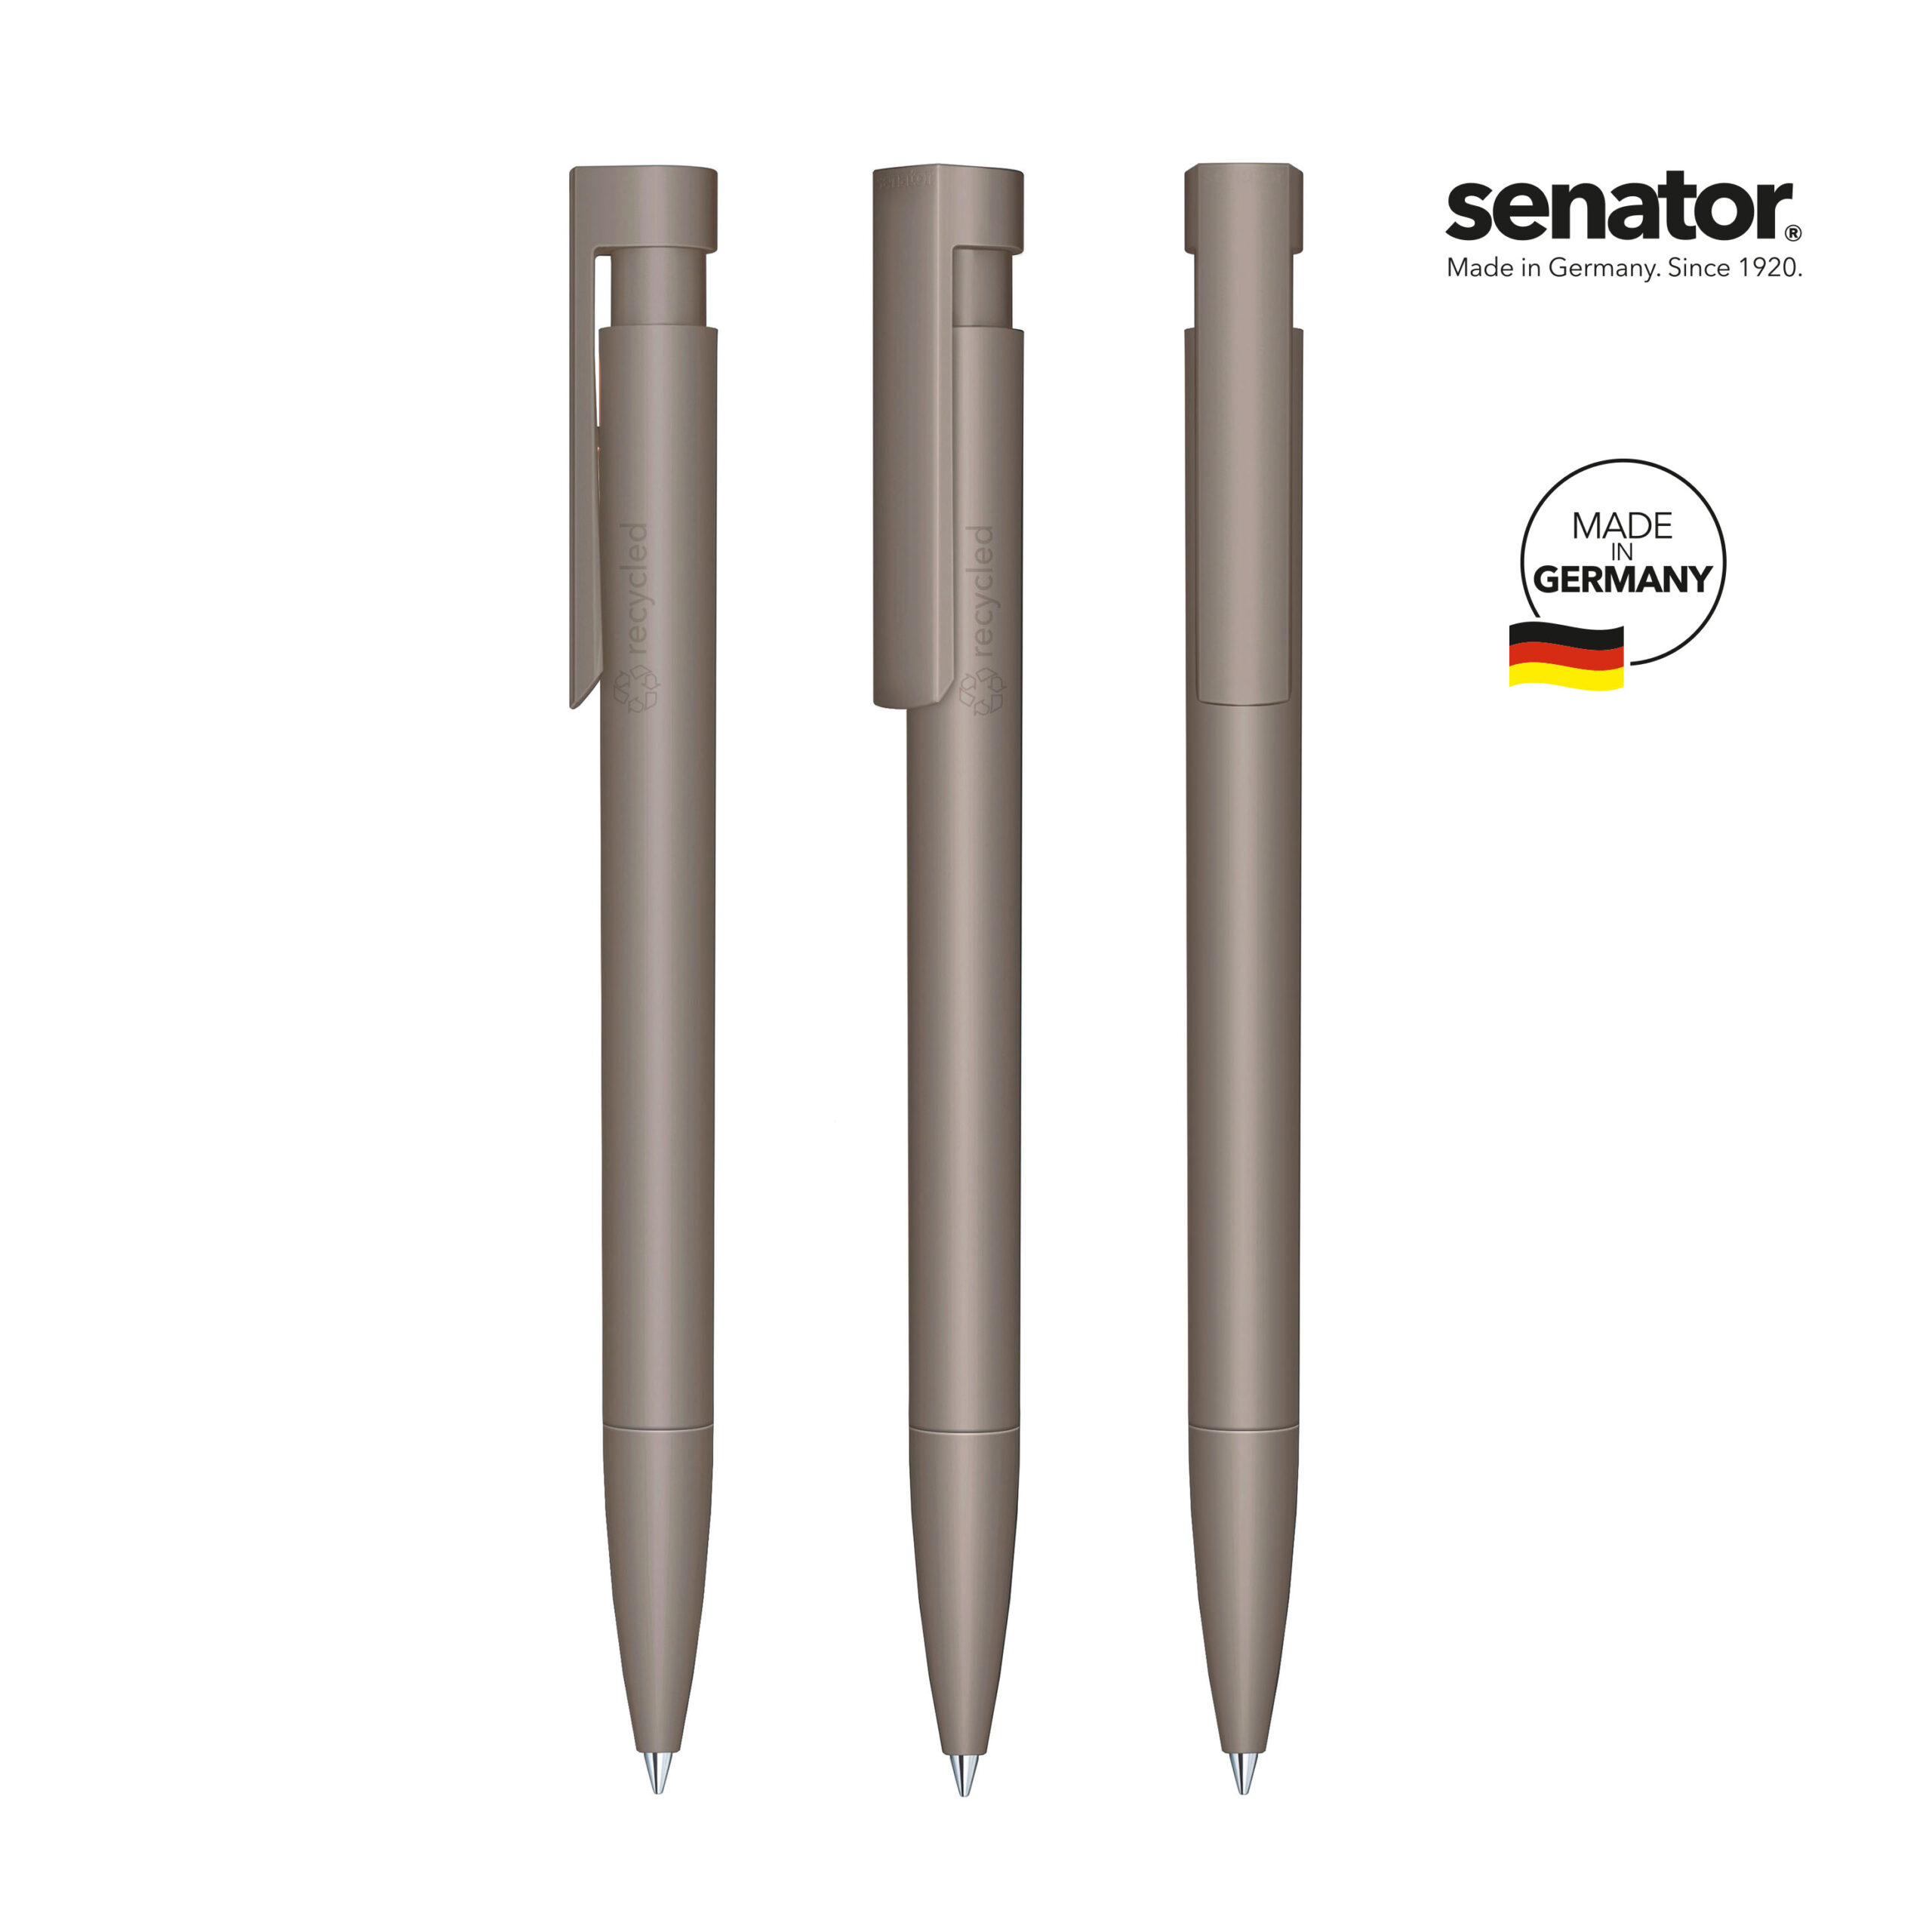 3307-senator-liberty-matt-recycled-pms-warmgray10-5-p